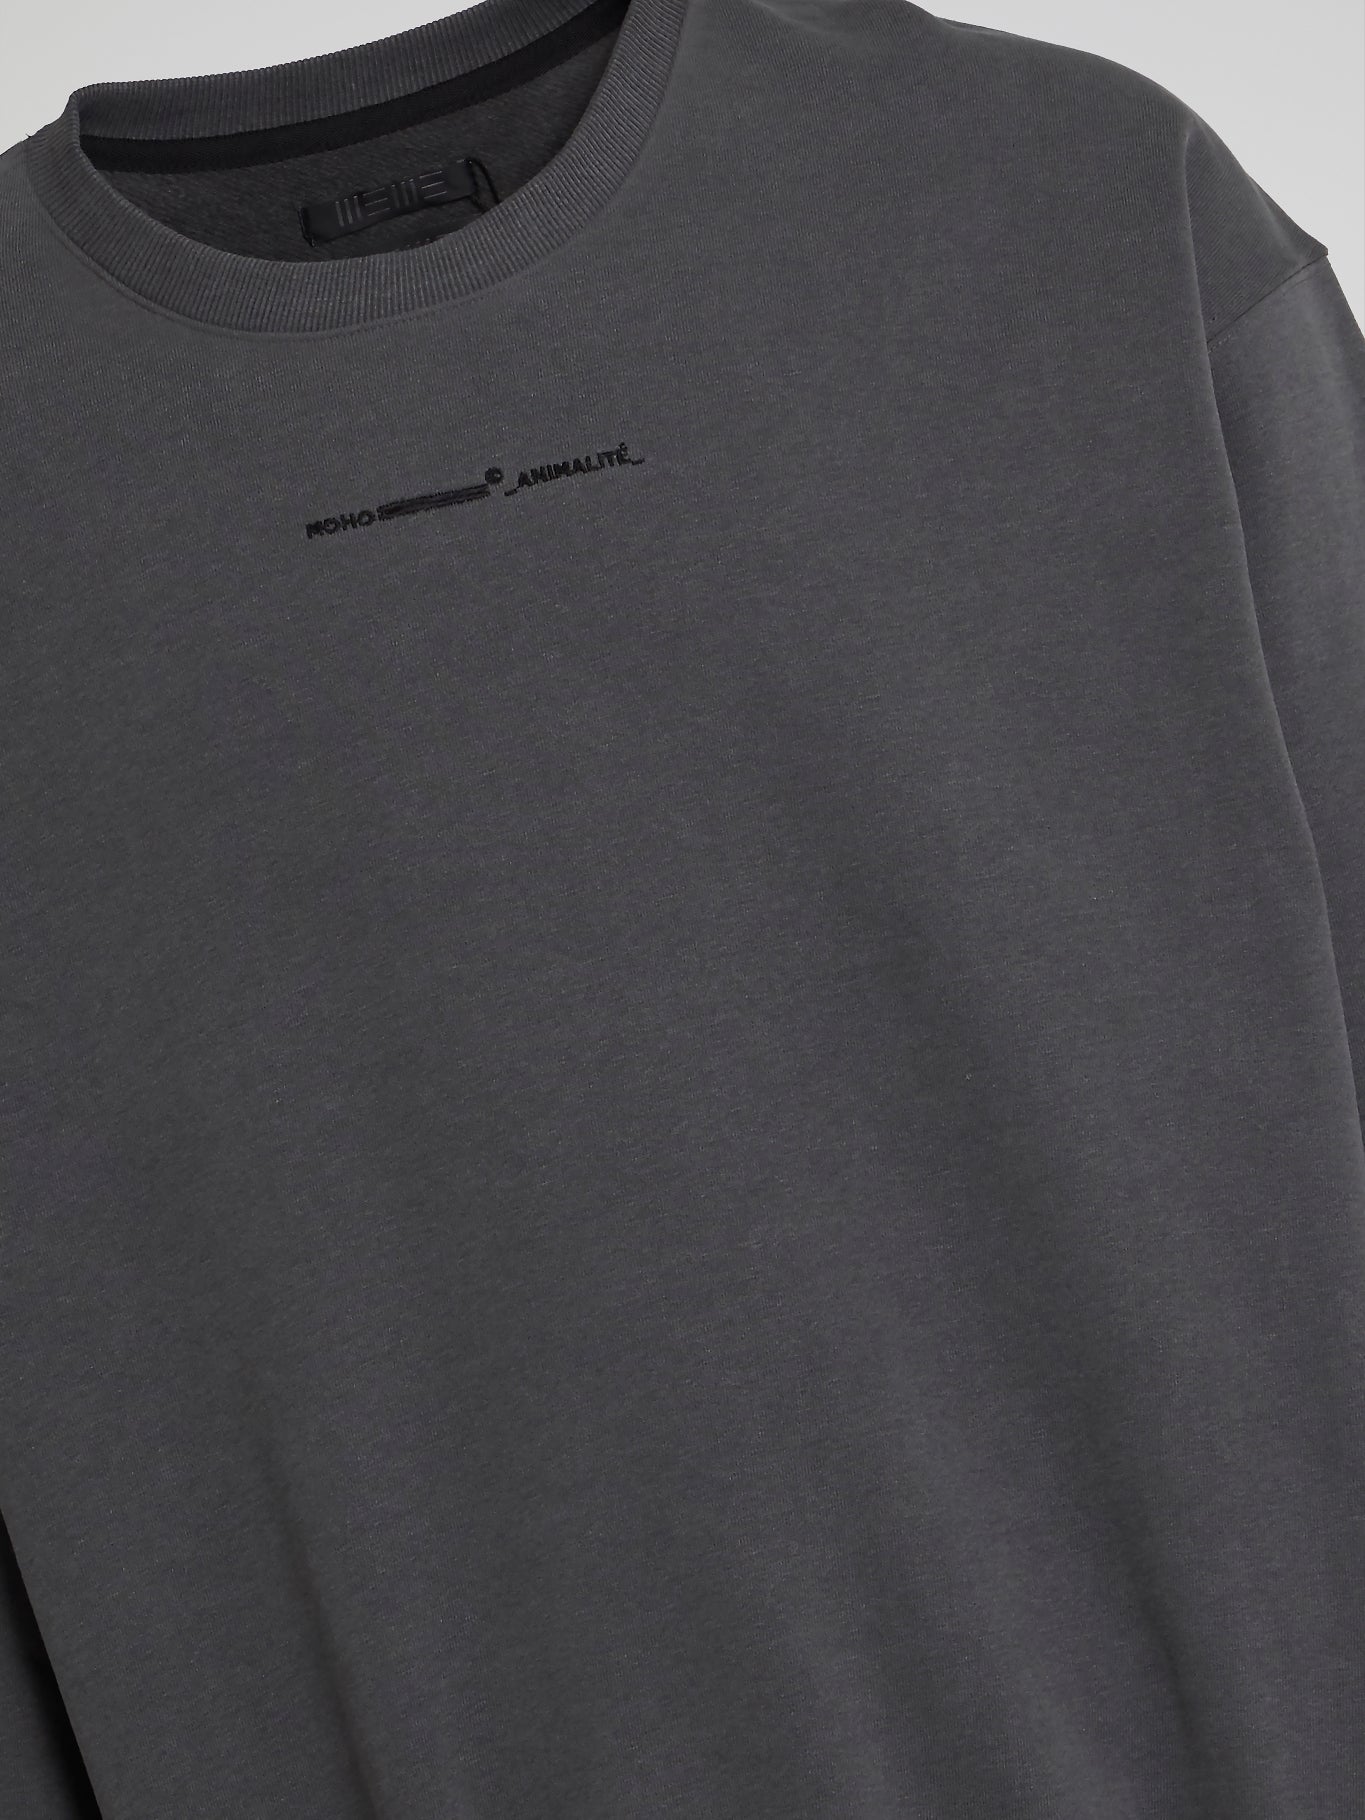 Grey Rear Leopard Print Sweatshirt